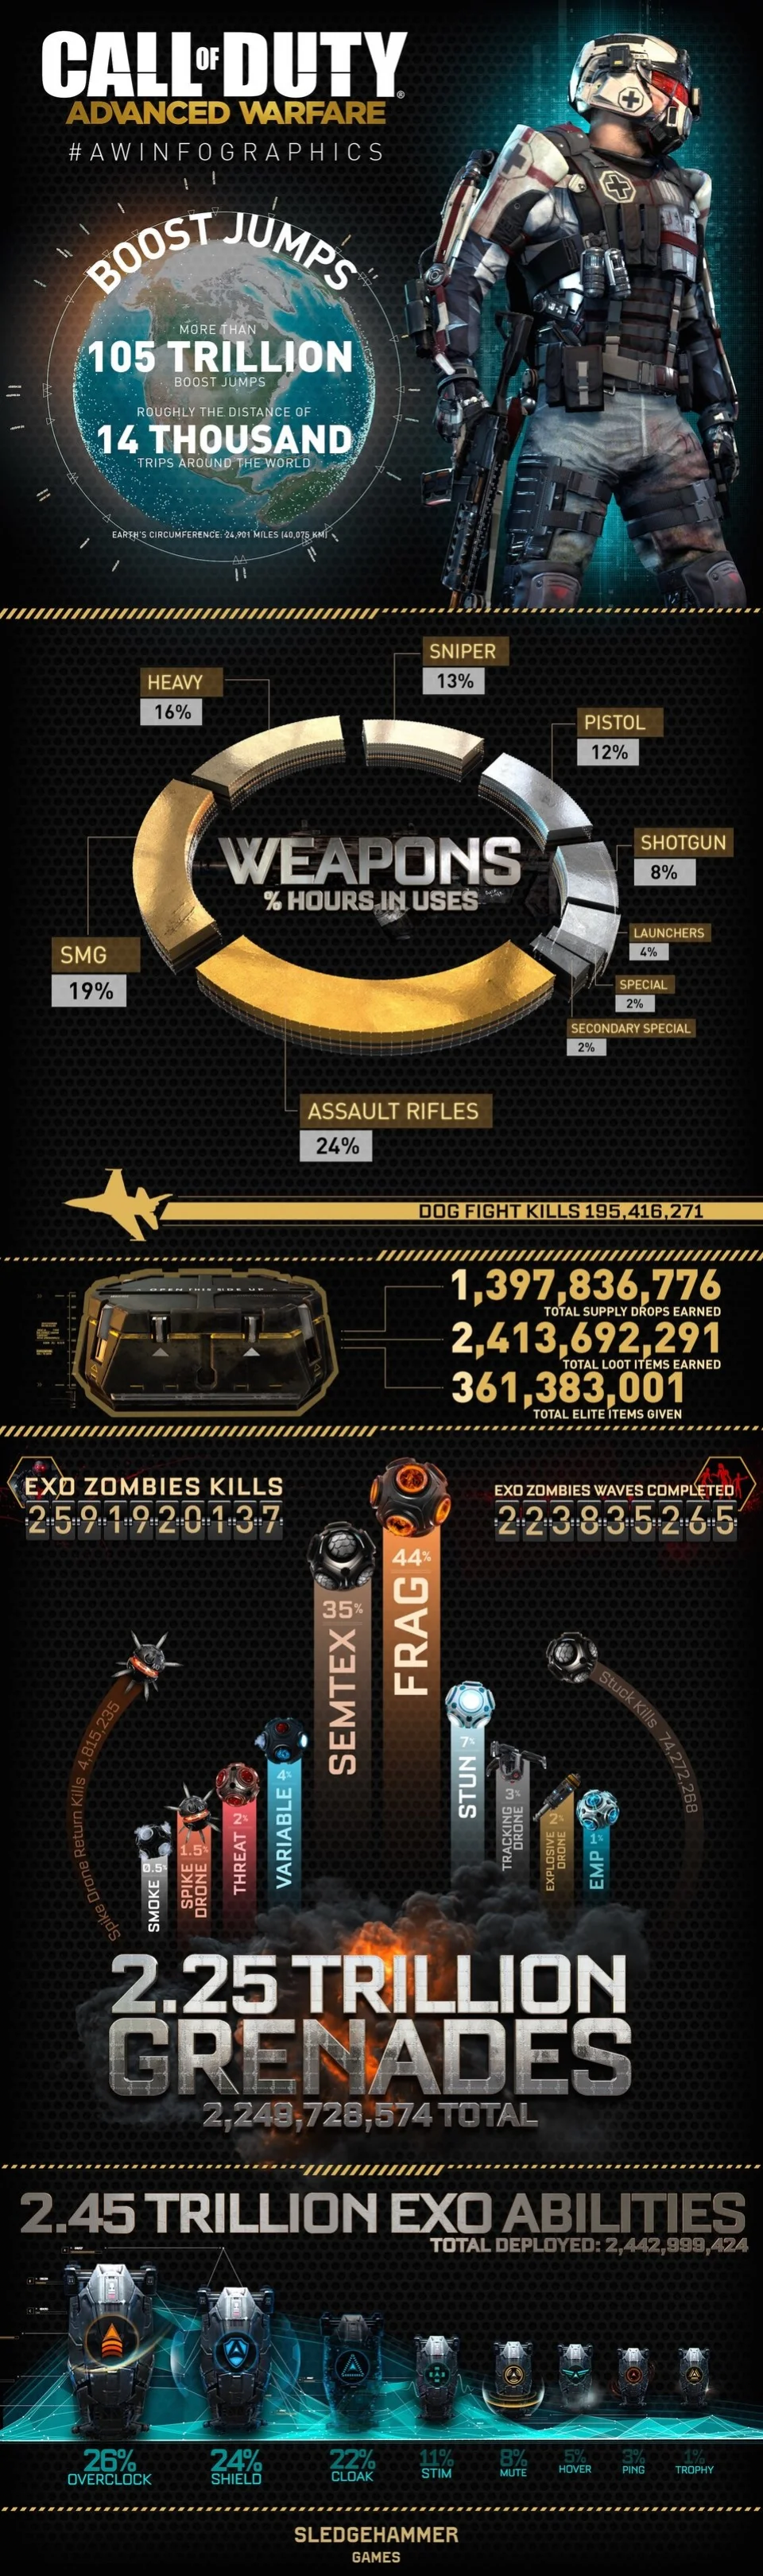 Поклонники Call of Duty: Advanced Warfare истребили 2,5 миллиарда зомби - фото 1